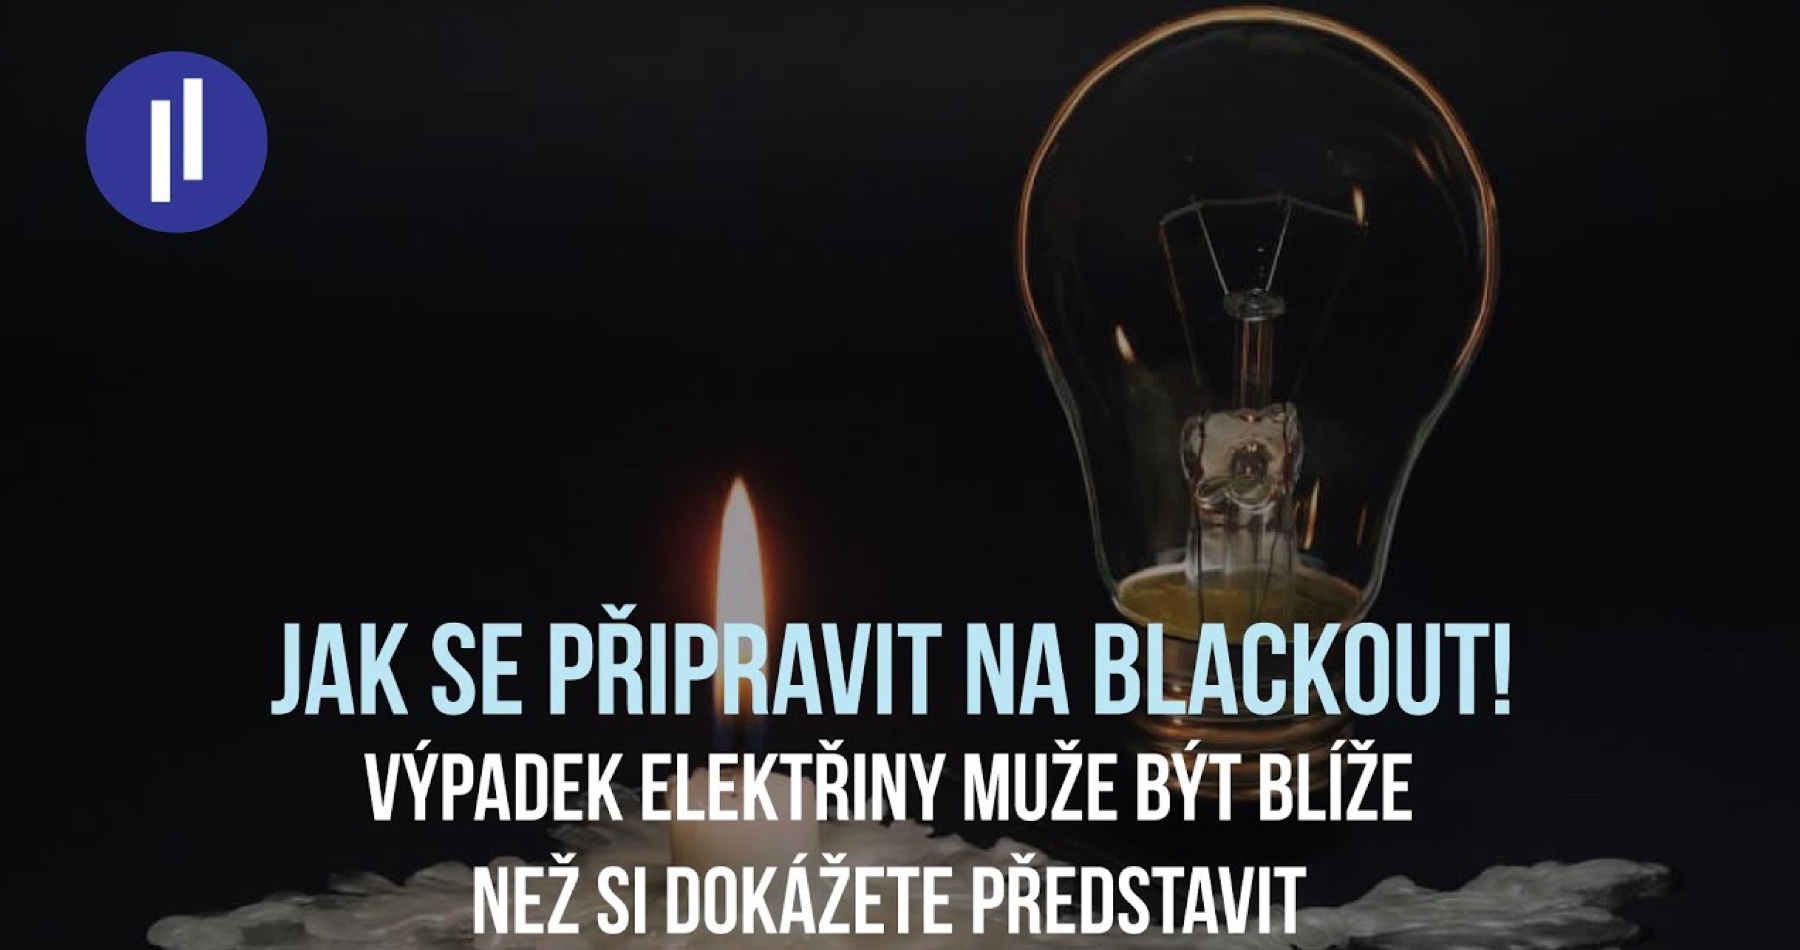 Jak být připraven na blackout?